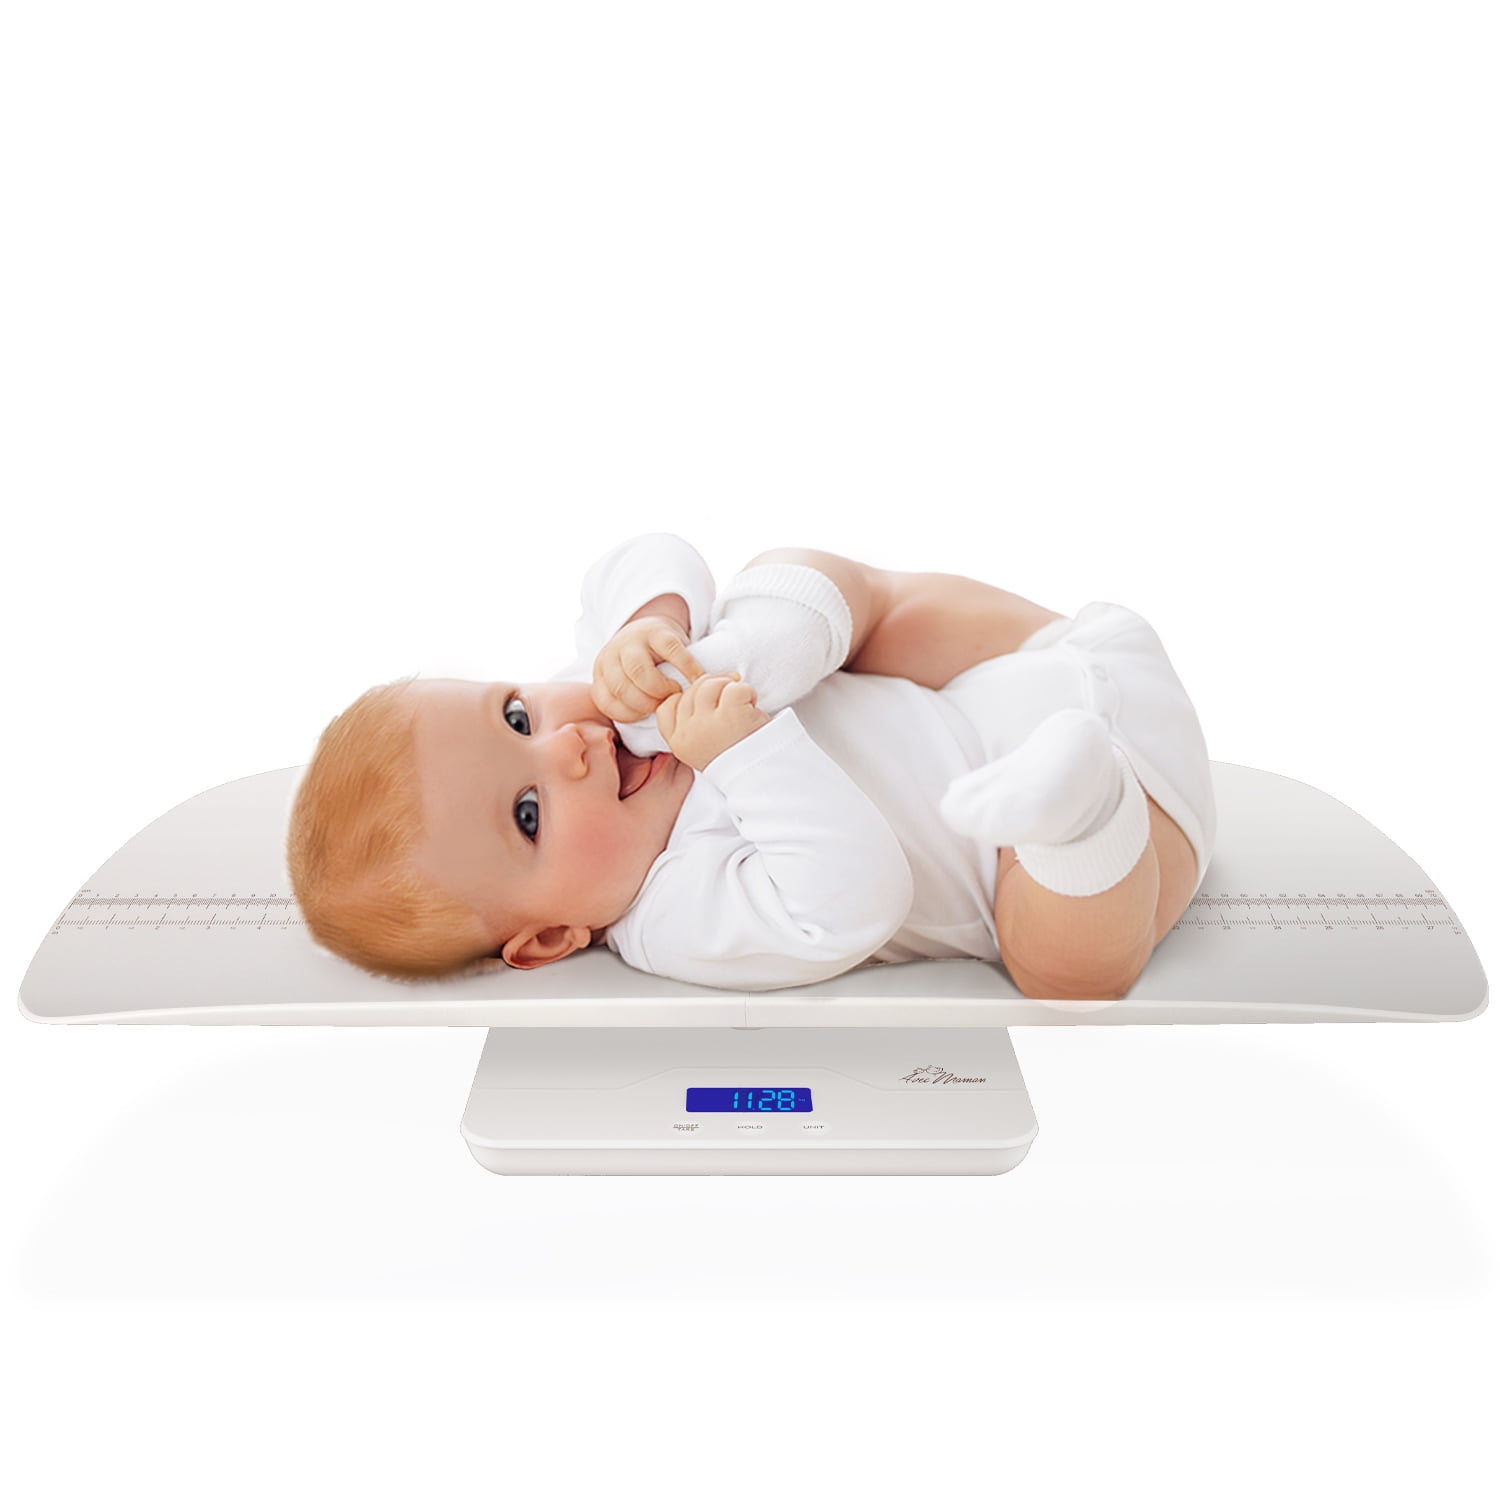 Eat Smart Digital Baby Scale for Sale in Phoenix, AZ - OfferUp